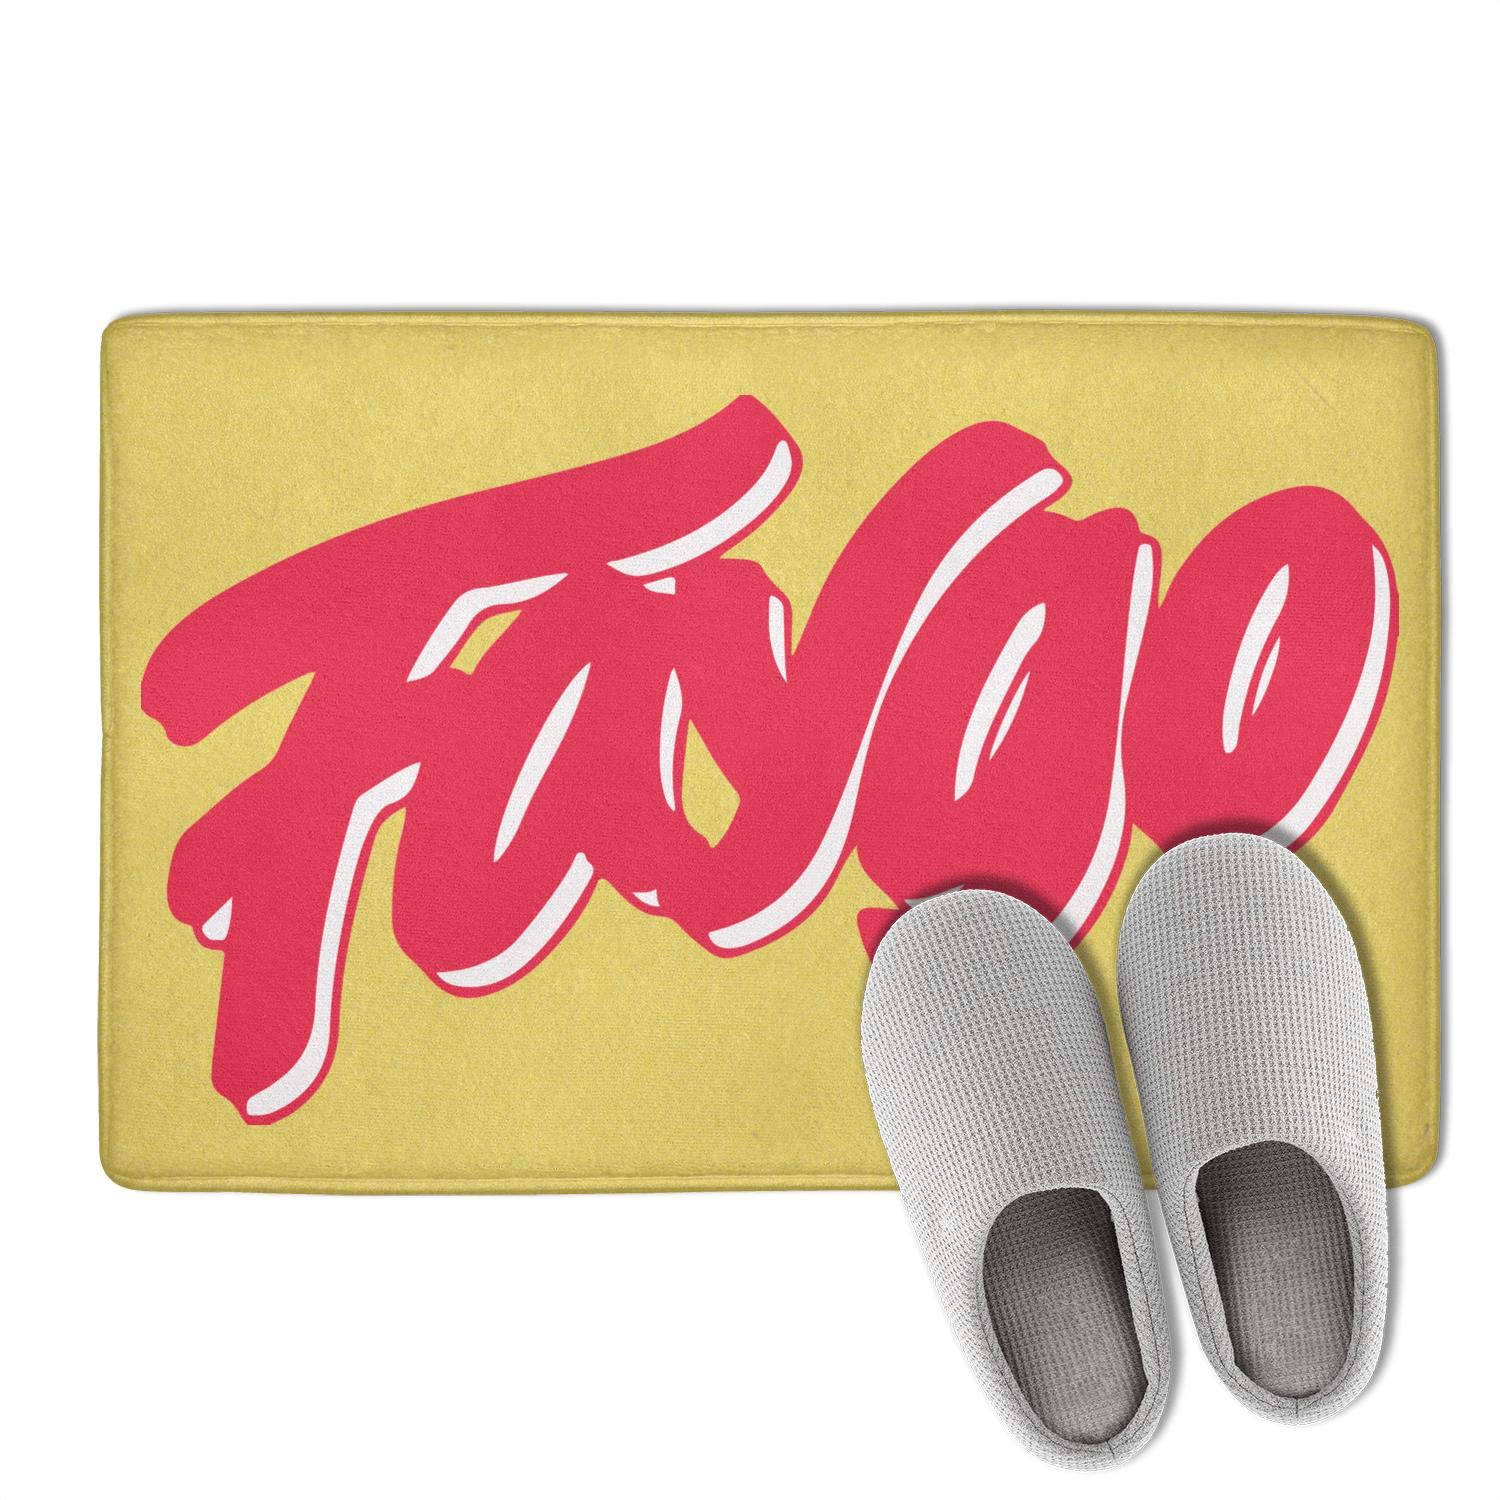 Faygo Logo - Jdfrrv Dddd Indoor Outdoor 31x19 Faygo Drink Logo